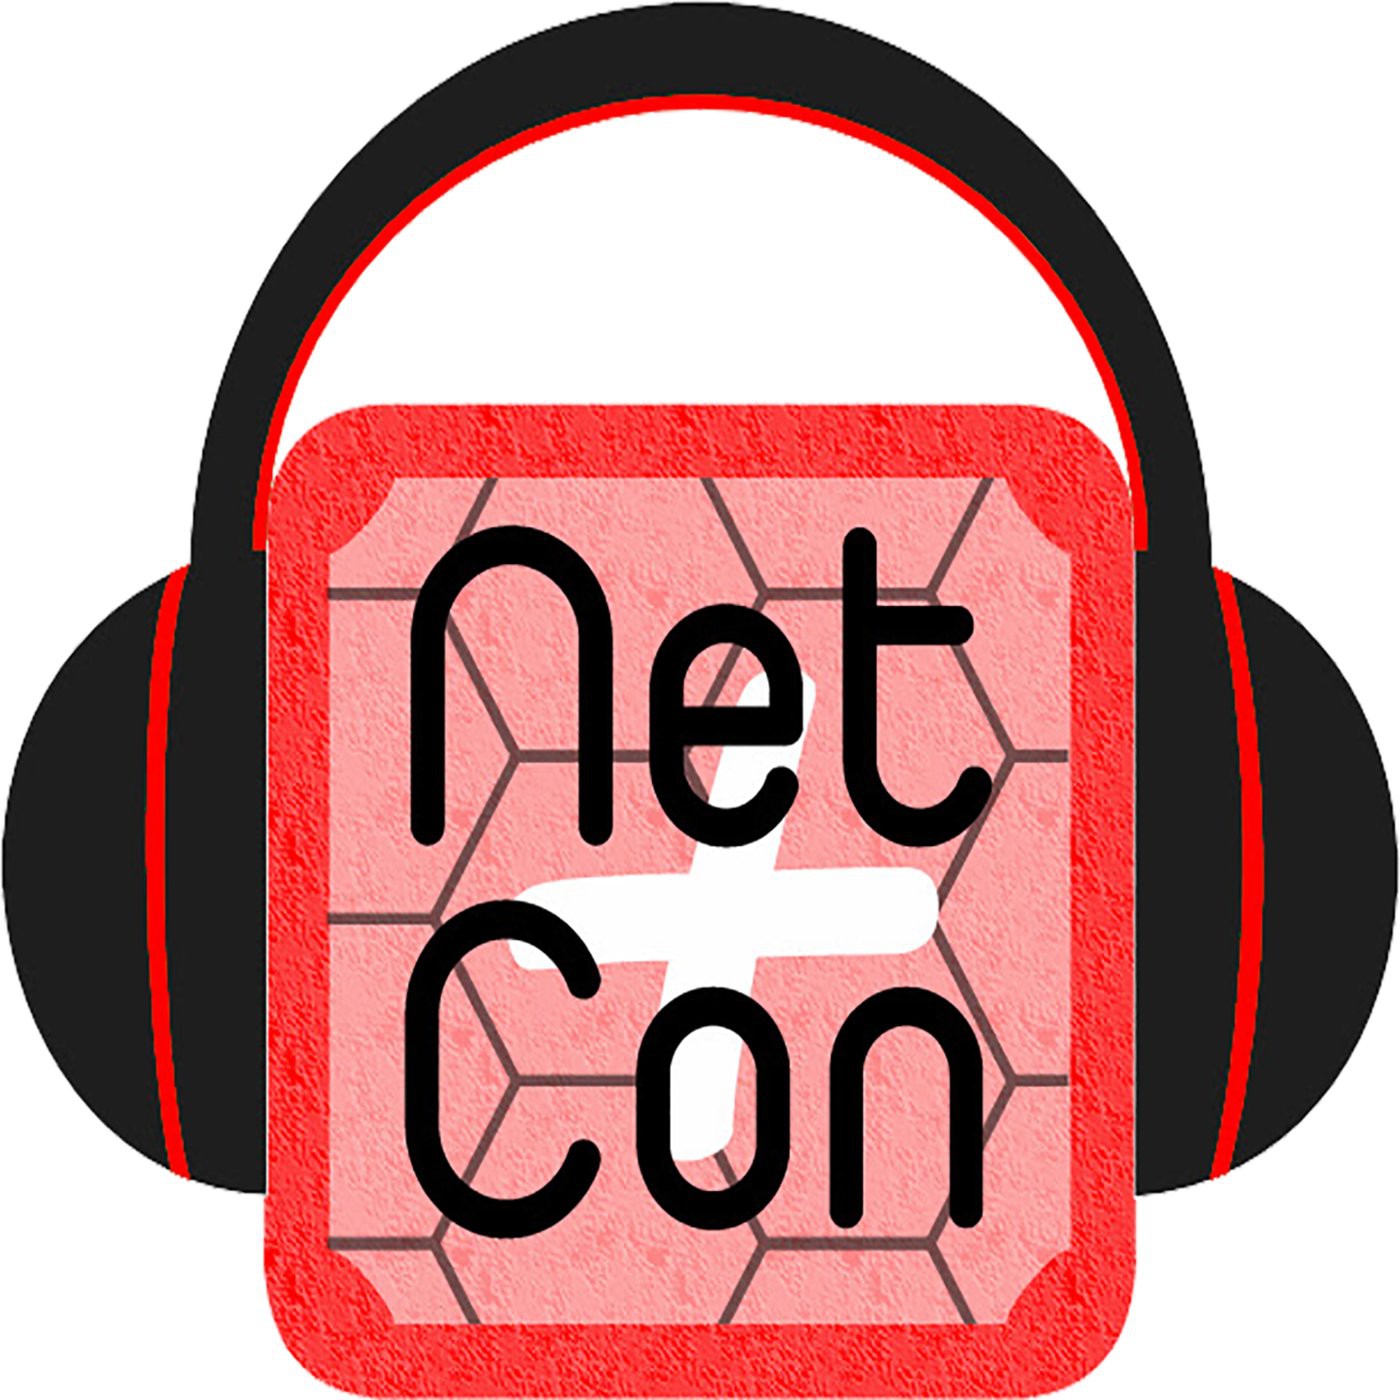 NetCon